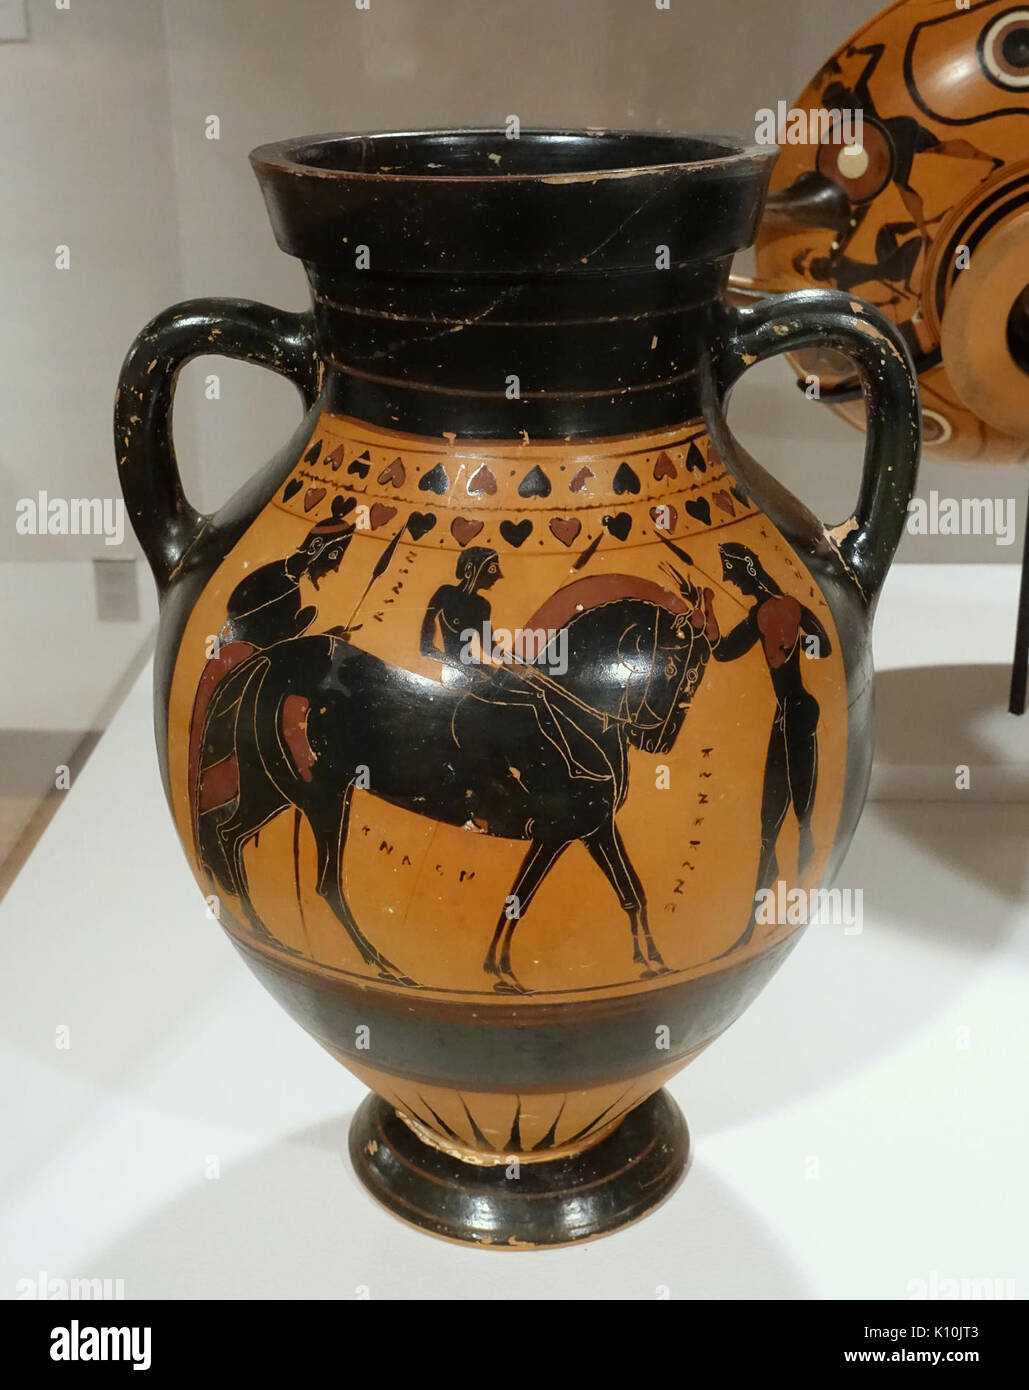 Amphora with equestrian scenes, Pointed Nose Painter, Tyrrhenian group, Greek, Attic, c. 550 BC, black figure technique   Krannert Art Museum, UIUC   DSC06540 Stock Photo